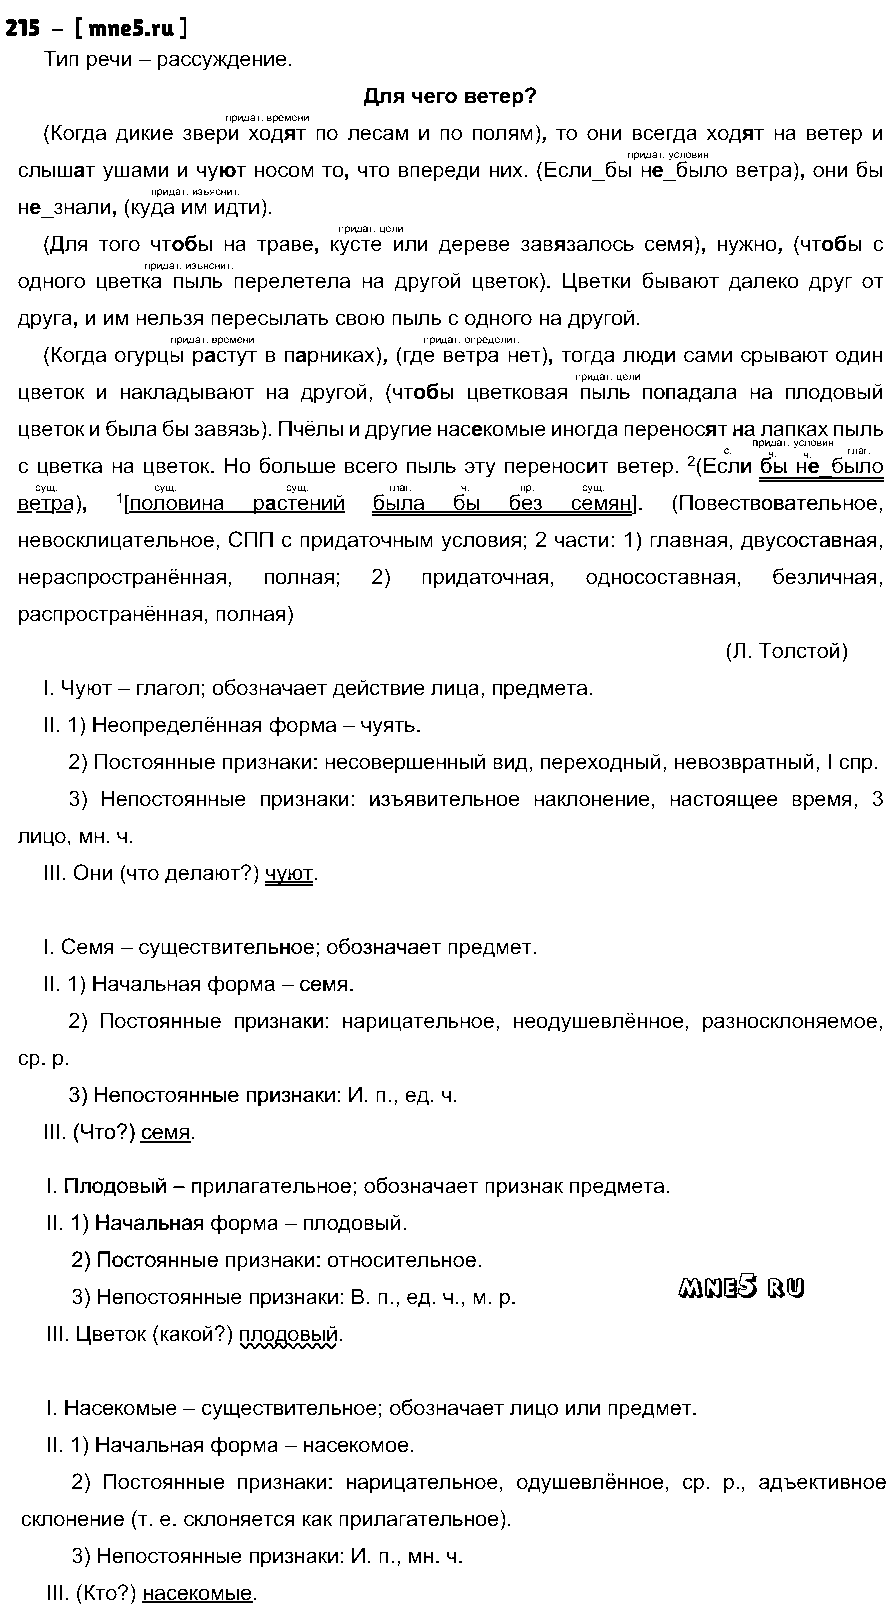 ГДЗ Русский язык 9 класс - 215